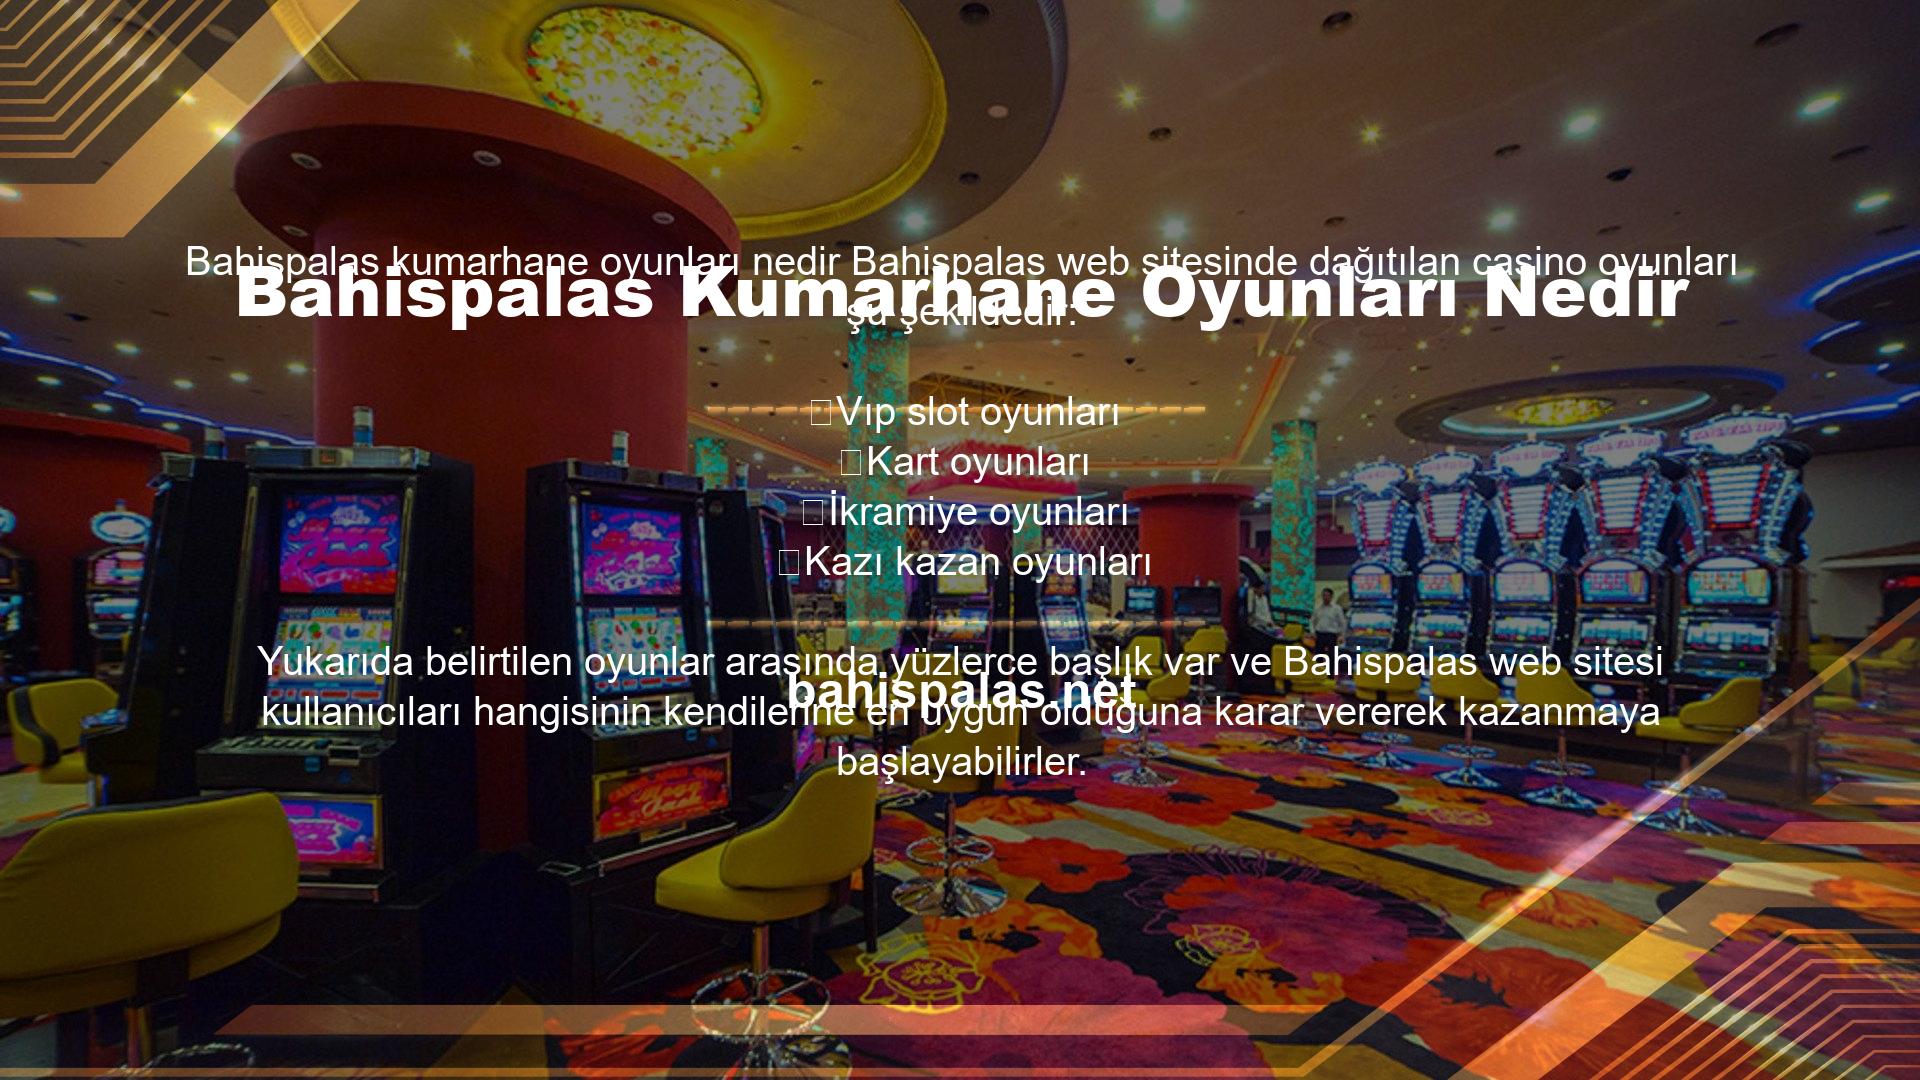 Bahispalas Casino Oyunları Yüksek Bahis Oranlarına SahiptirBahisler ve bu durumda çok yüksek bahisli oyunlar söz konusu olduğunda Bahispalas web sitesi çok cömert bir politika izliyor